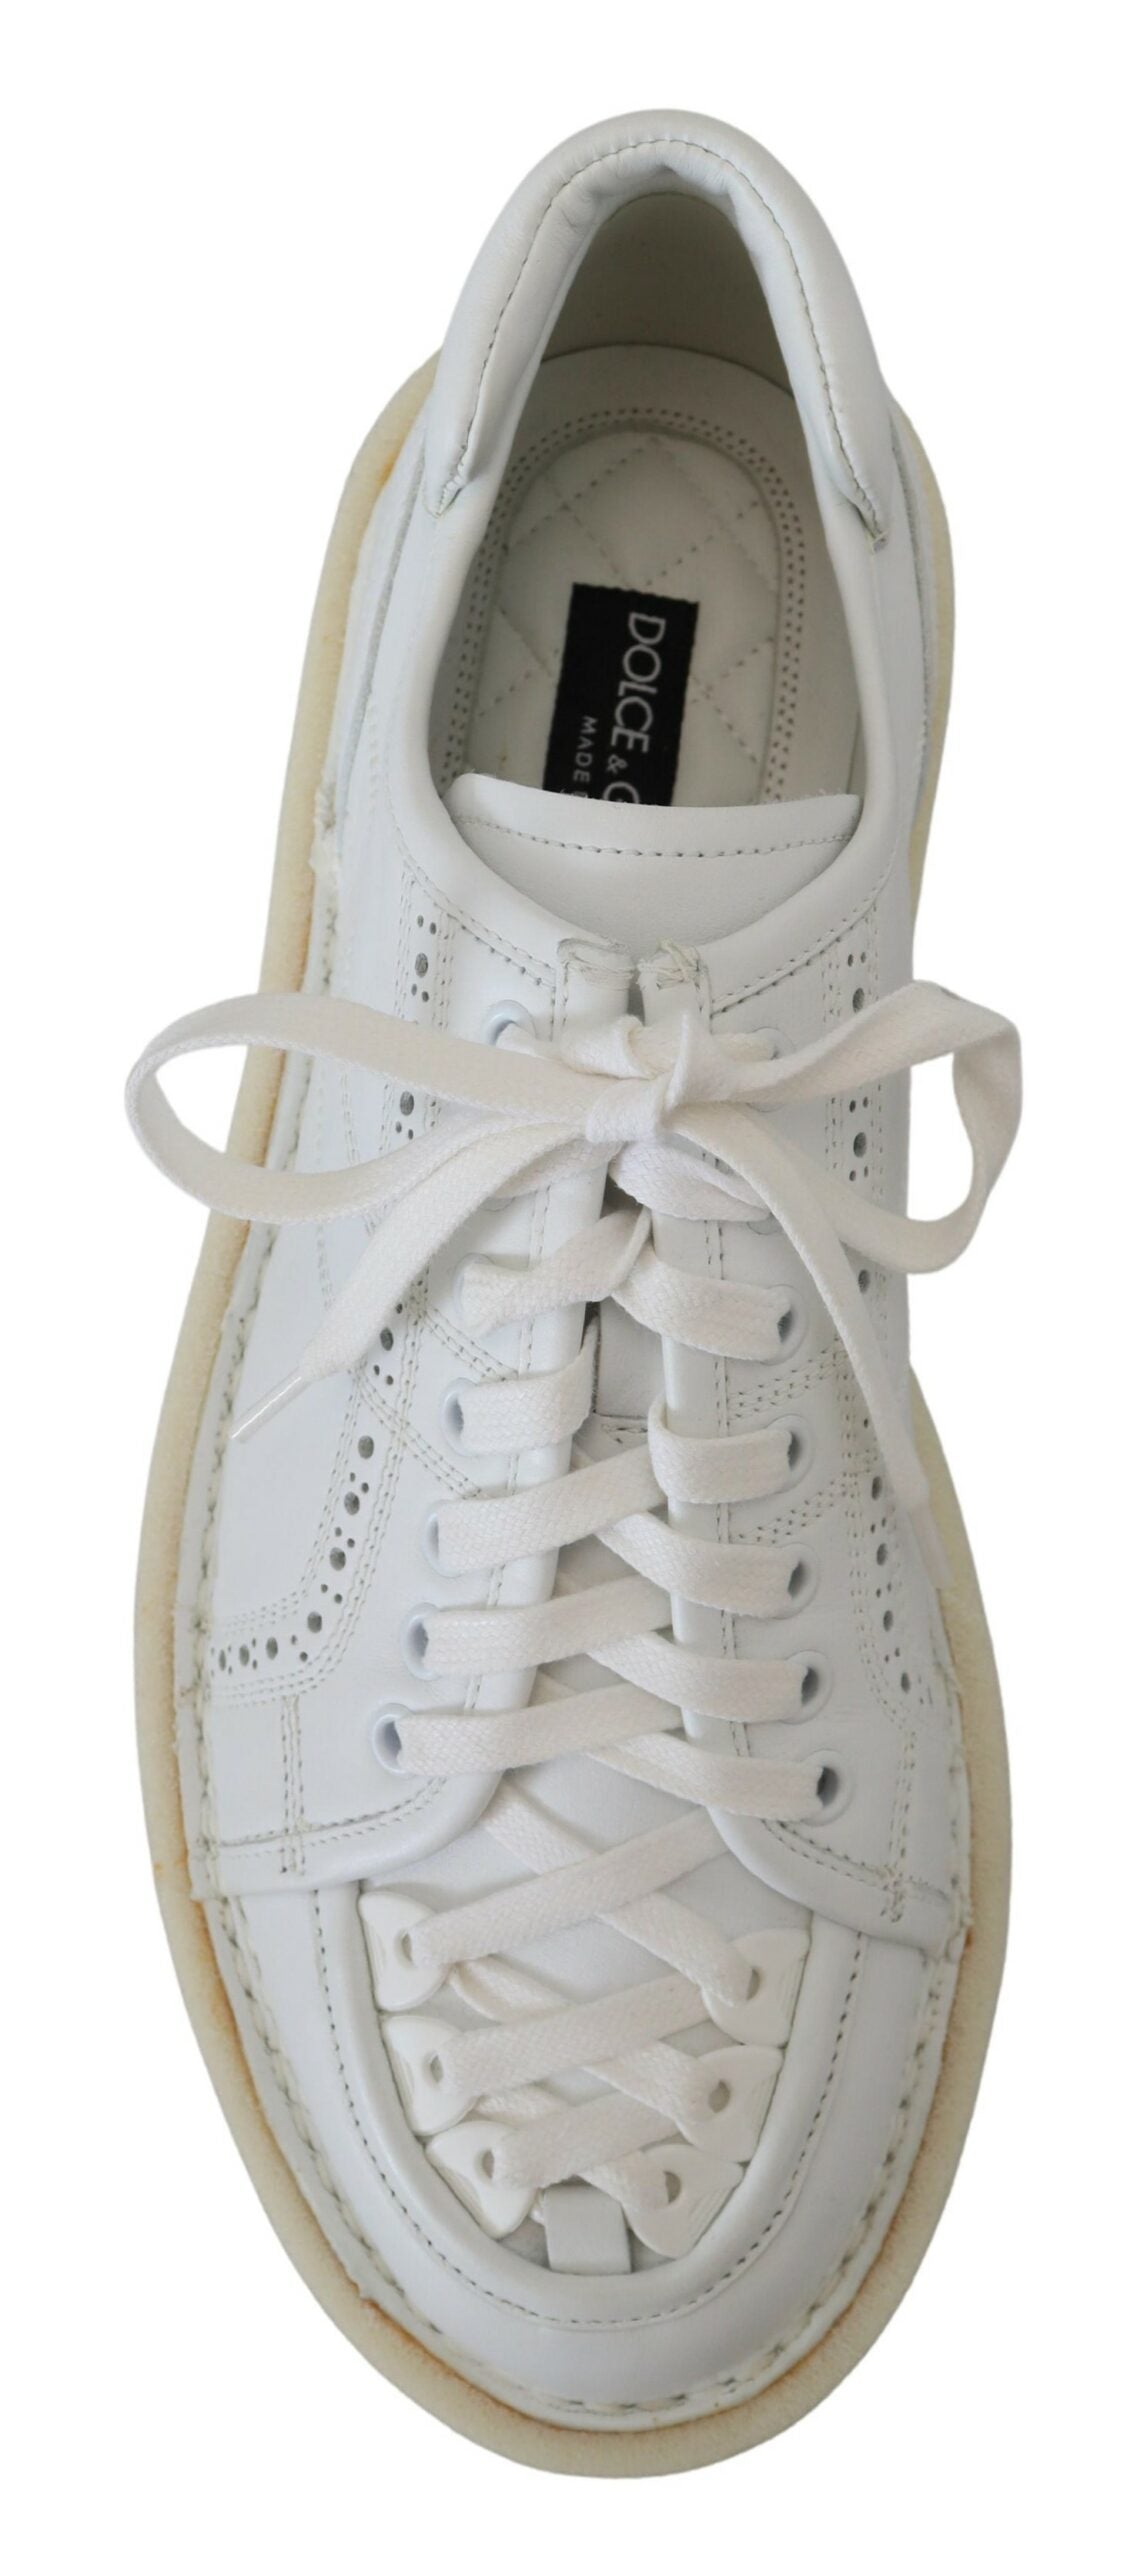 Dolce & Gabbana in pelle bianca bassa top sneaker oxford scarpe casual